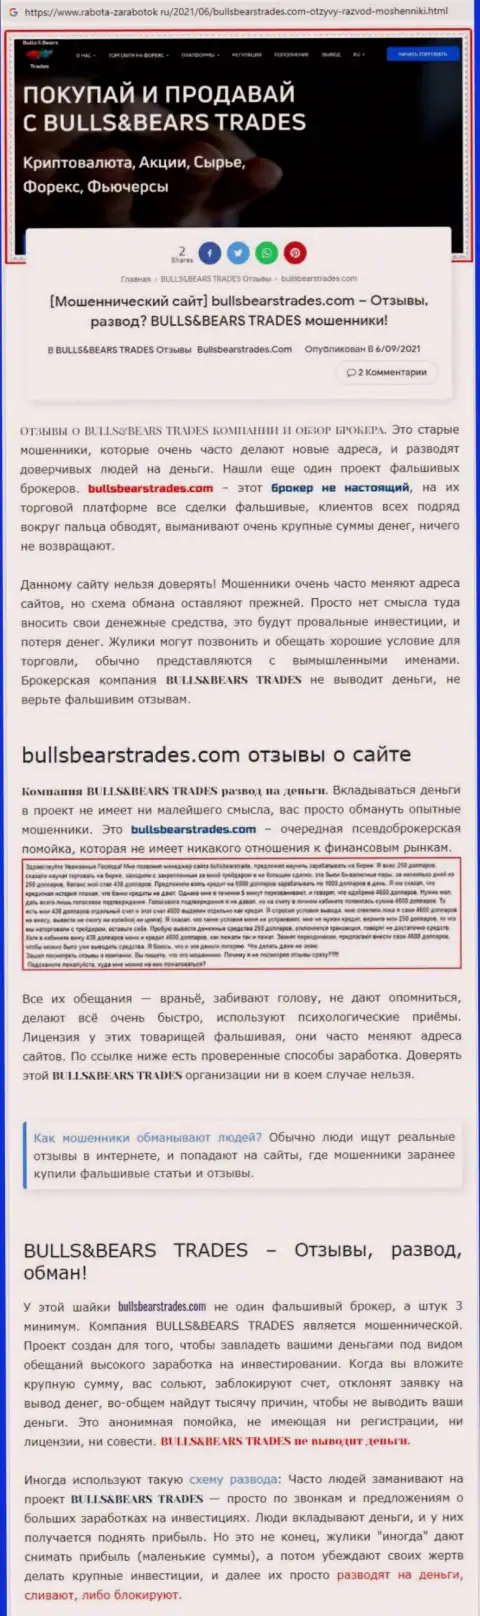 Обзор преступно действующей организации BullsBearsTrades Com о том, как обувает лохов